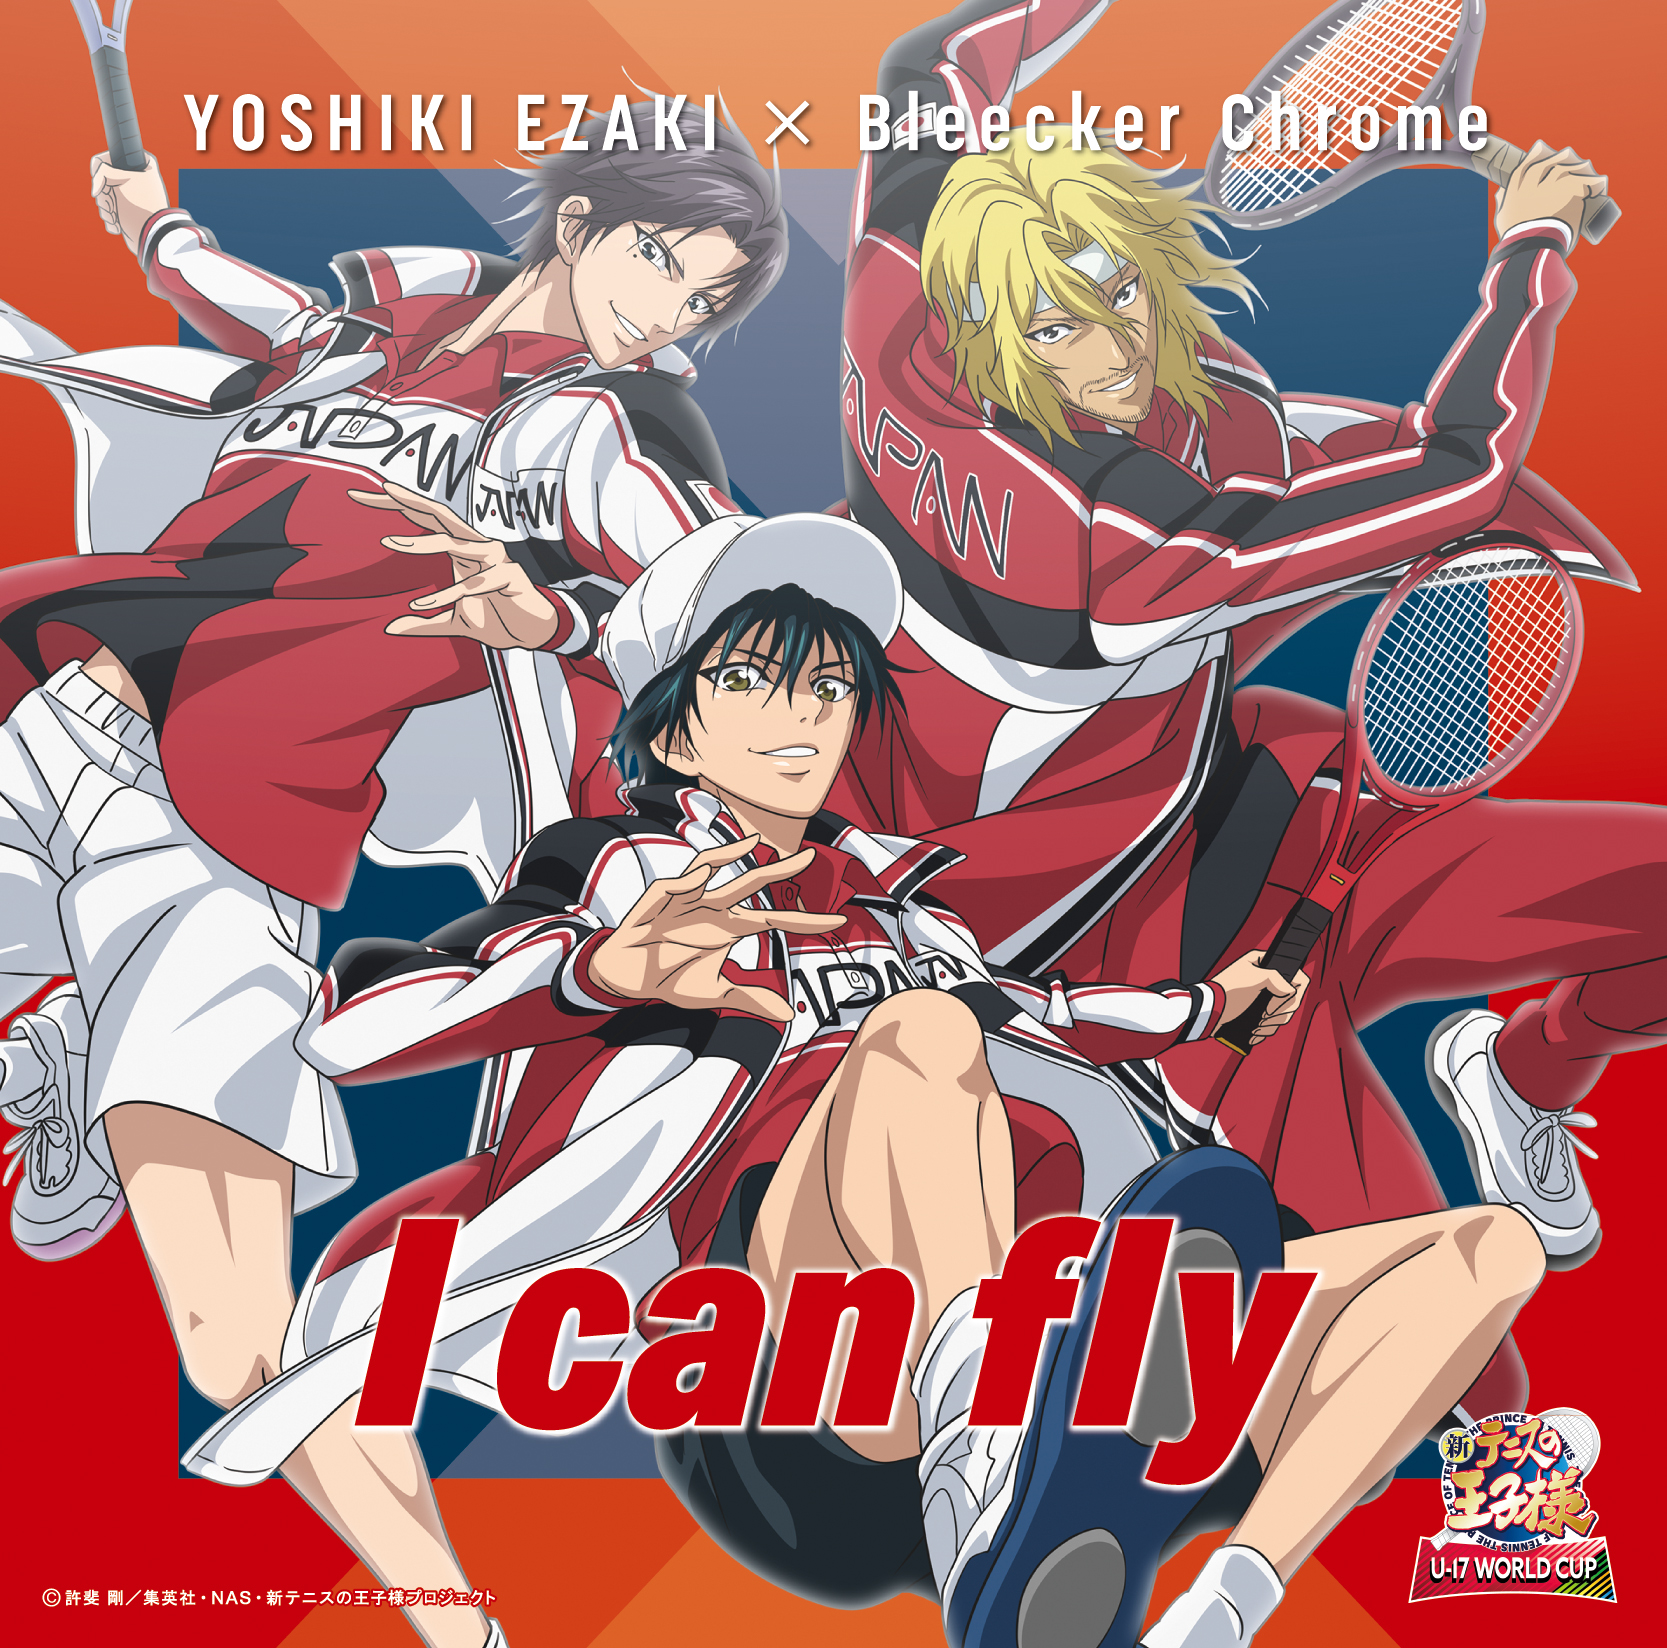 YOSHIKI EZAKI x Bleecker Chrome「I can fly」(TYPE-B)